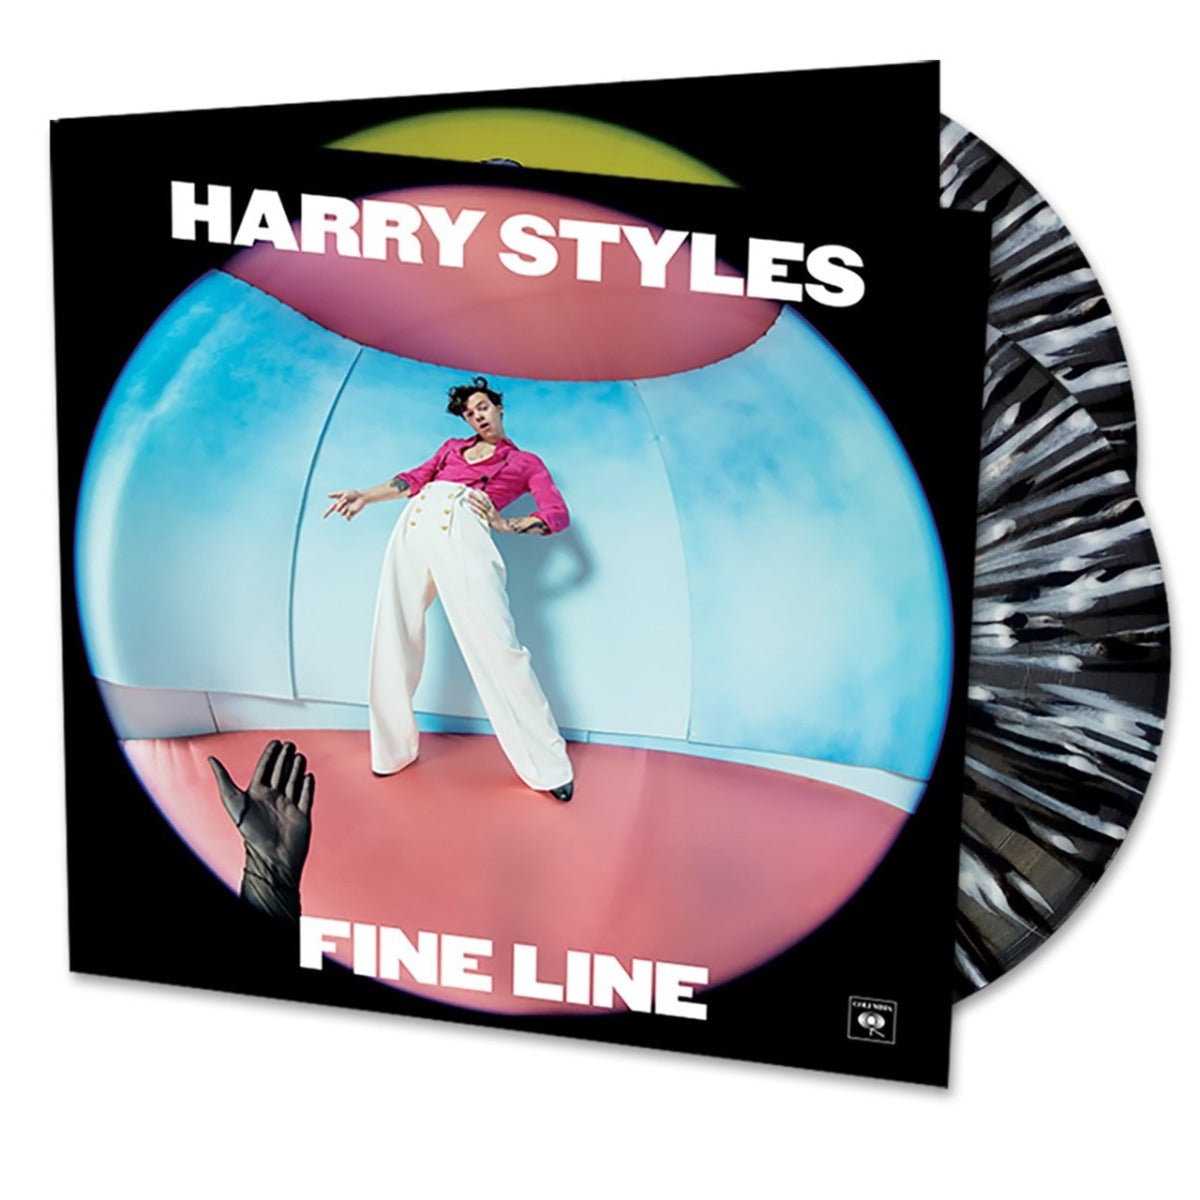 Harry Styles | Fine Line (Limited Edition, Black & White Splatter Vinyl, Gatefold Cover) (2 Lp's) | Vinyl